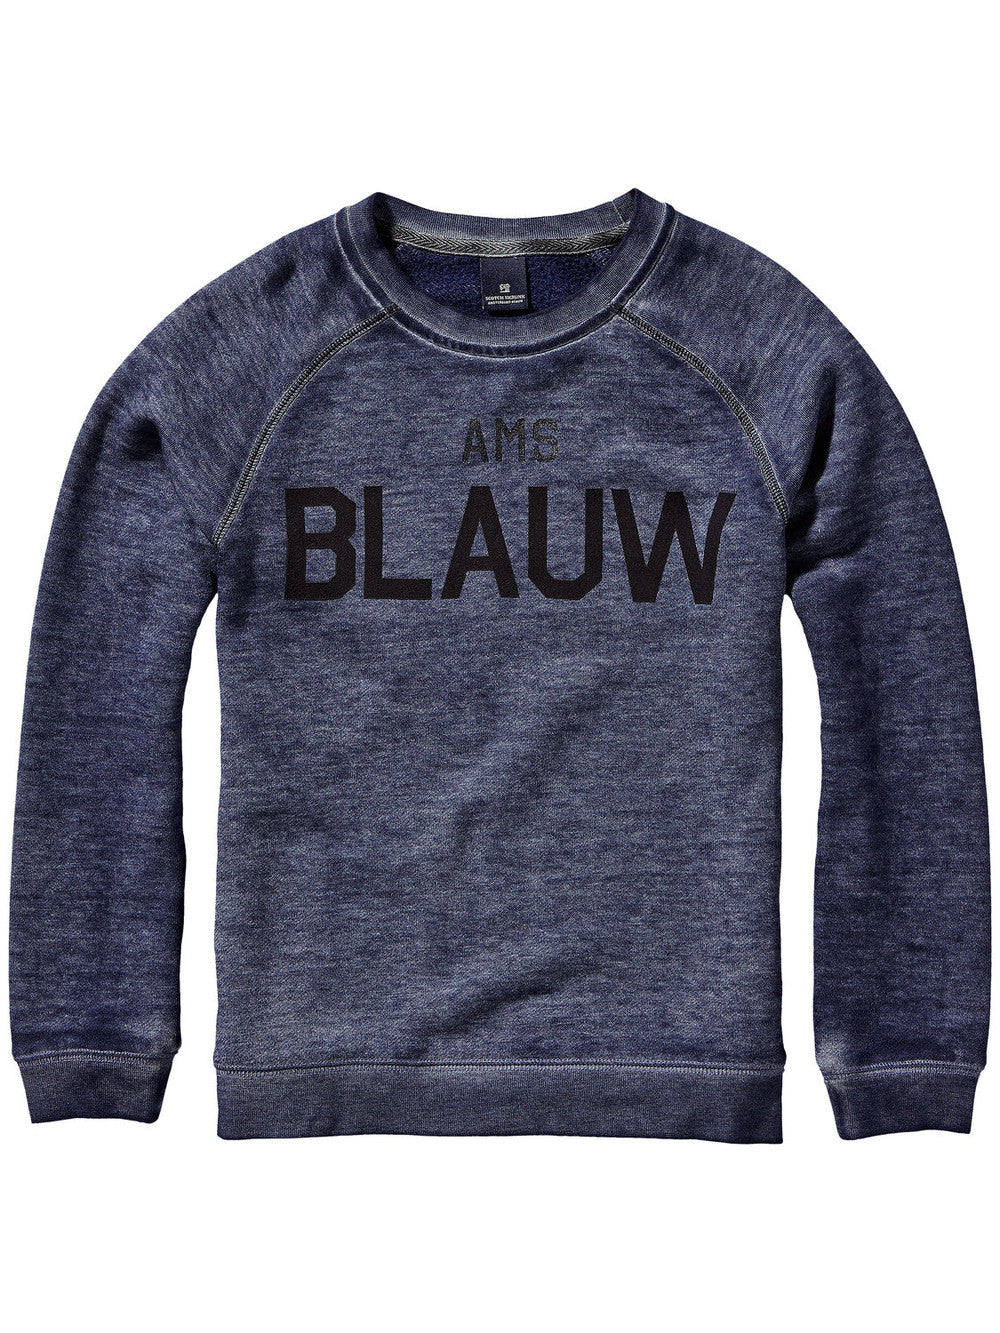 Scotch & Soda Boy 'BLAUW' Sweater Boys Sweaters & Sweatshirts Scotch Shrunk [Petit_New_York]